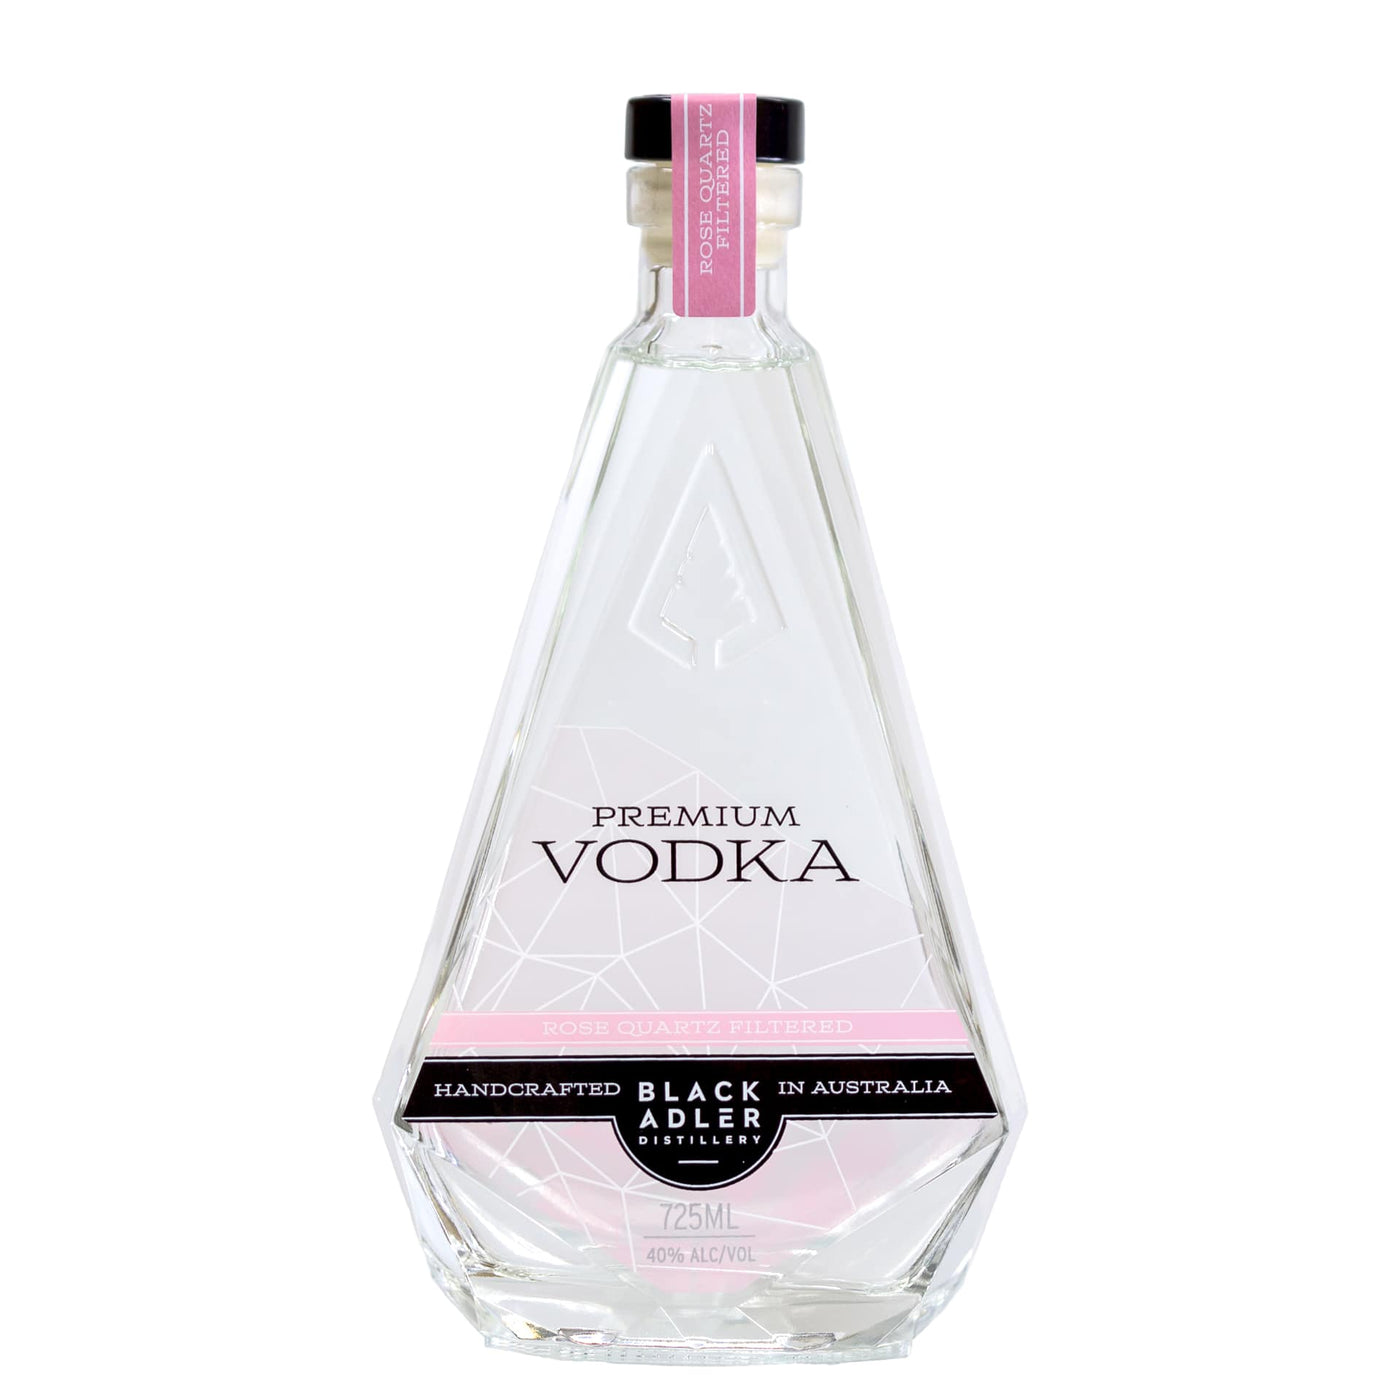 Vodka - Premium 'Rose Quartz Filtered' - 725ml  40% ACL/VOL